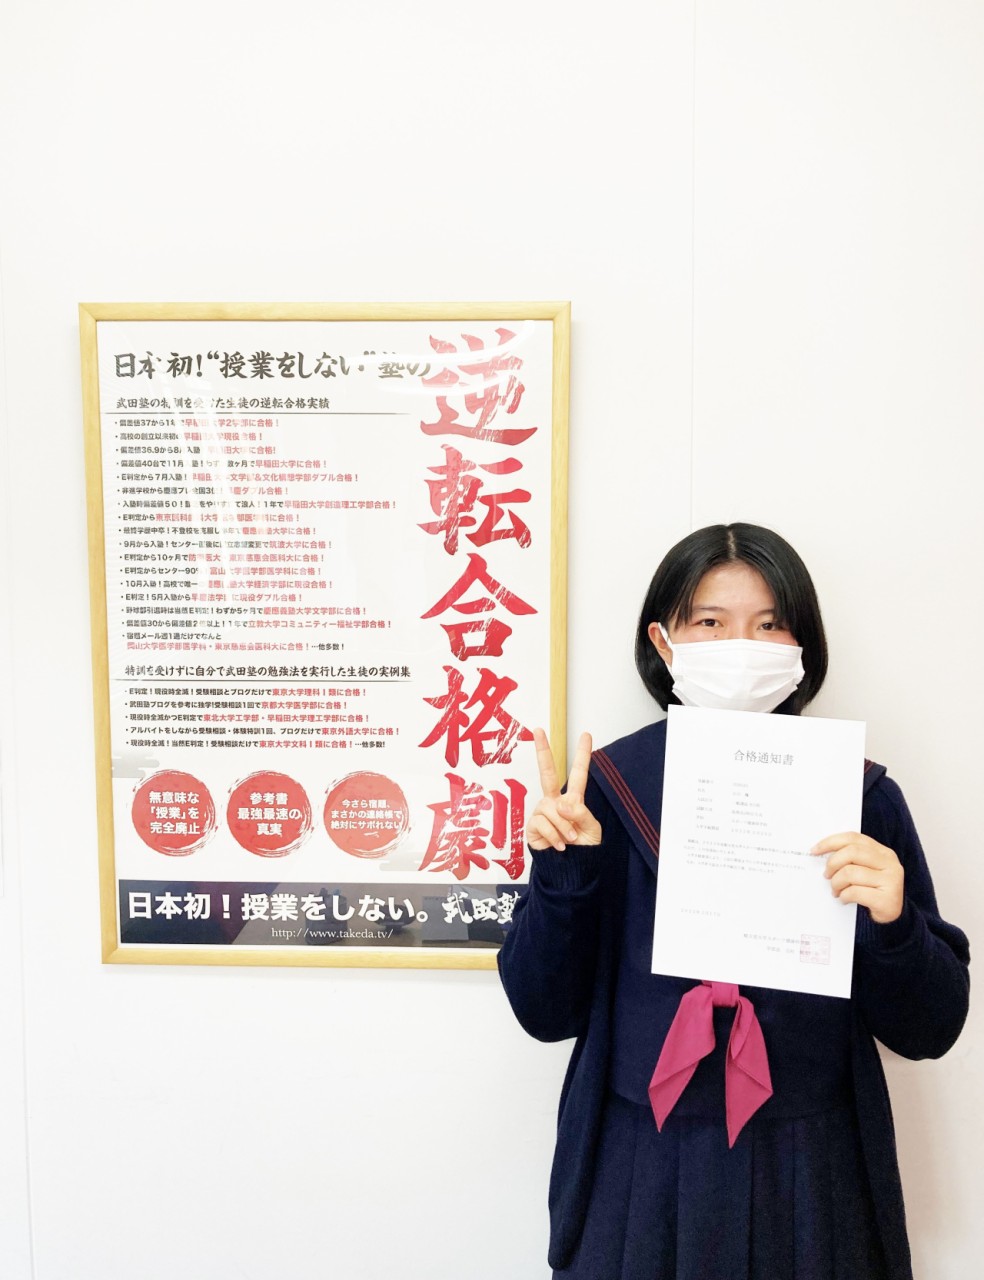 【合格体験記2022】石川楓さん、順天堂大学 スポーツ健康科学部 に逆転合格！